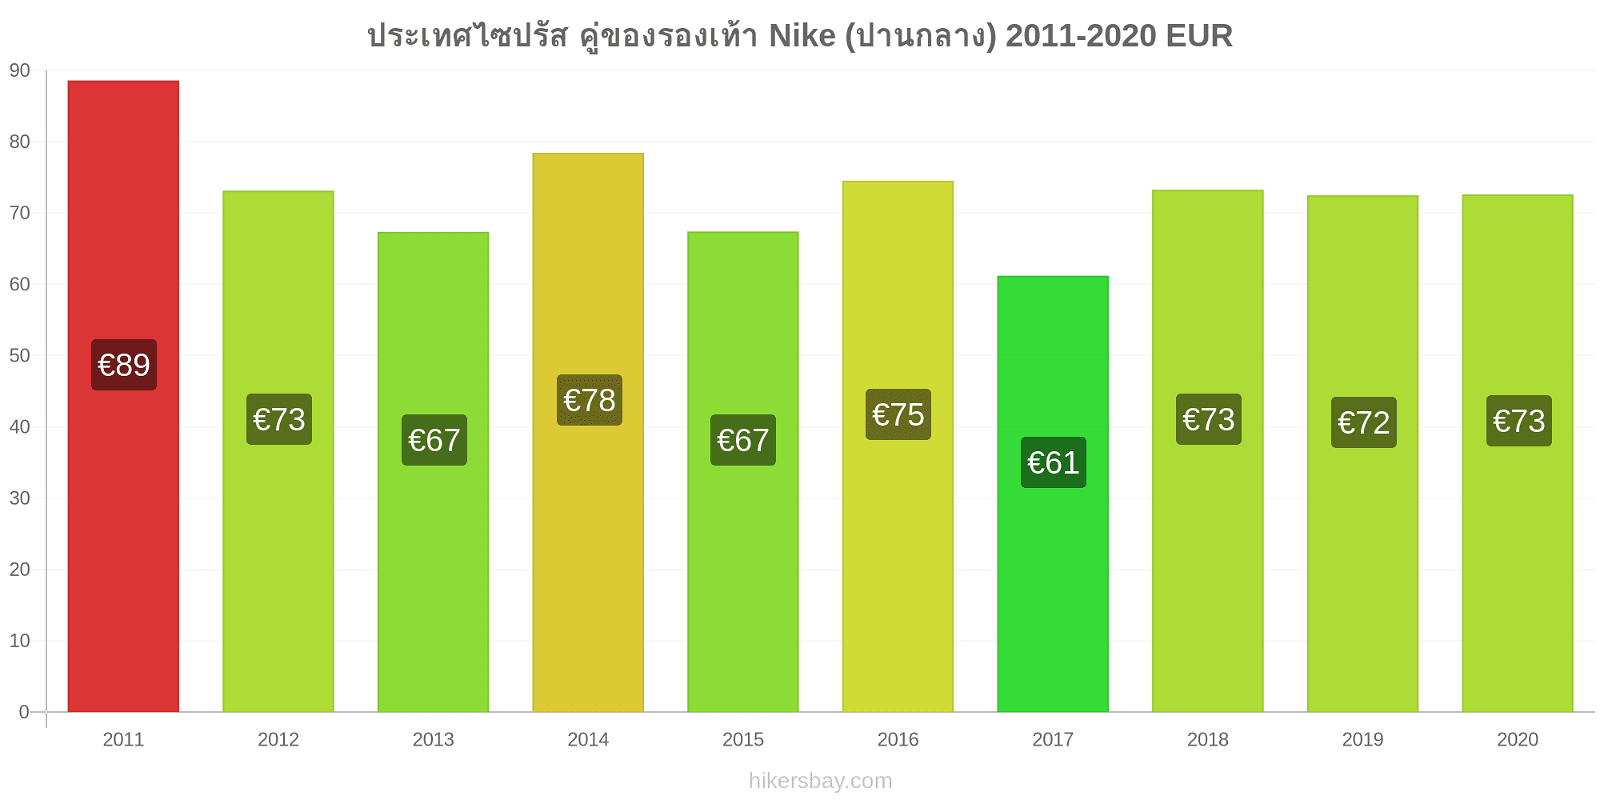 ประเทศไซปรัส การเปลี่ยนแปลงราคา คู่ของรองเท้า Nike (ปานกลาง) hikersbay.com